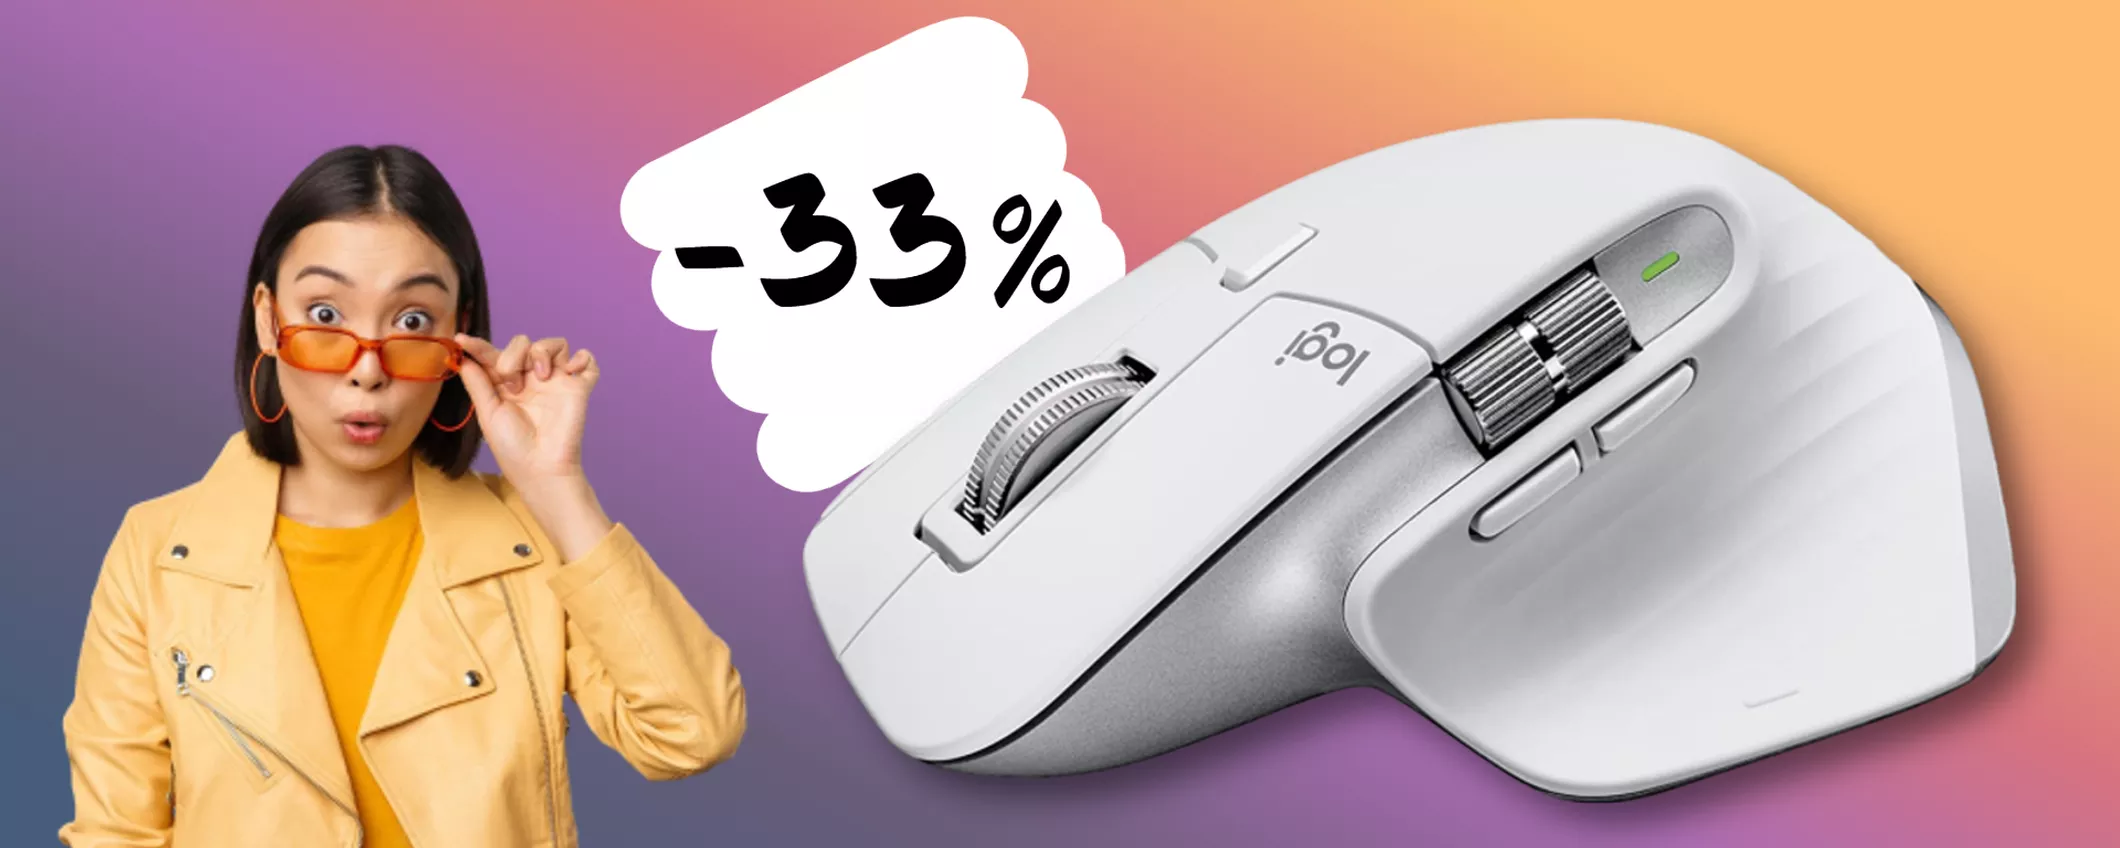 Logitech MX Master 3S, il mouse più amato dagli utenti Mac (-33%)